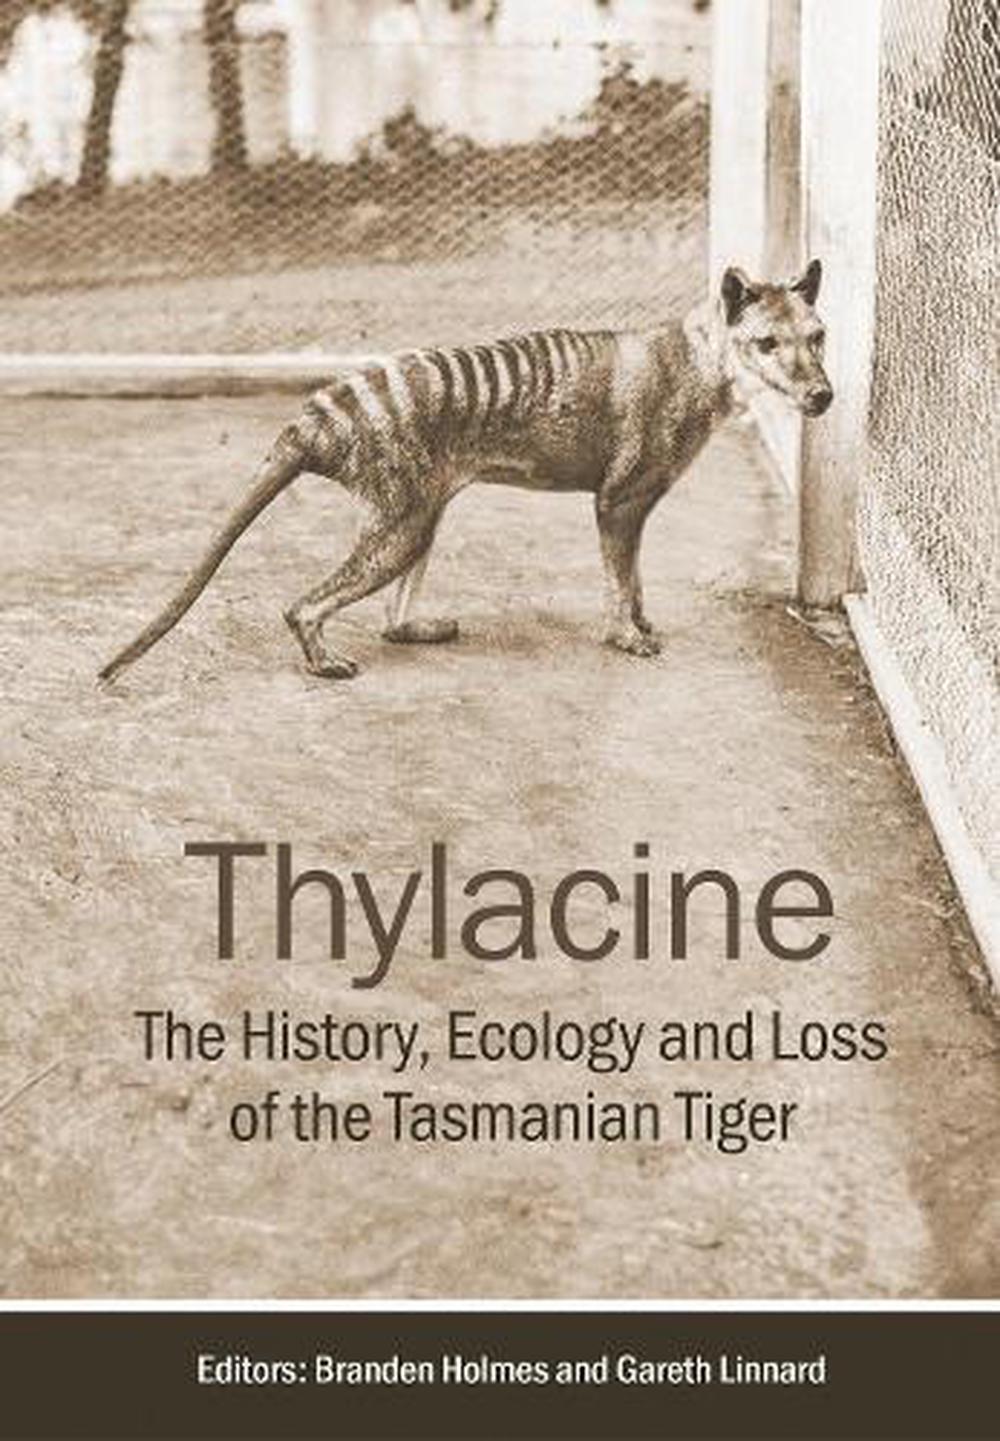 A photograph of a Thylacine at Beaumaris Zoo, 1936.